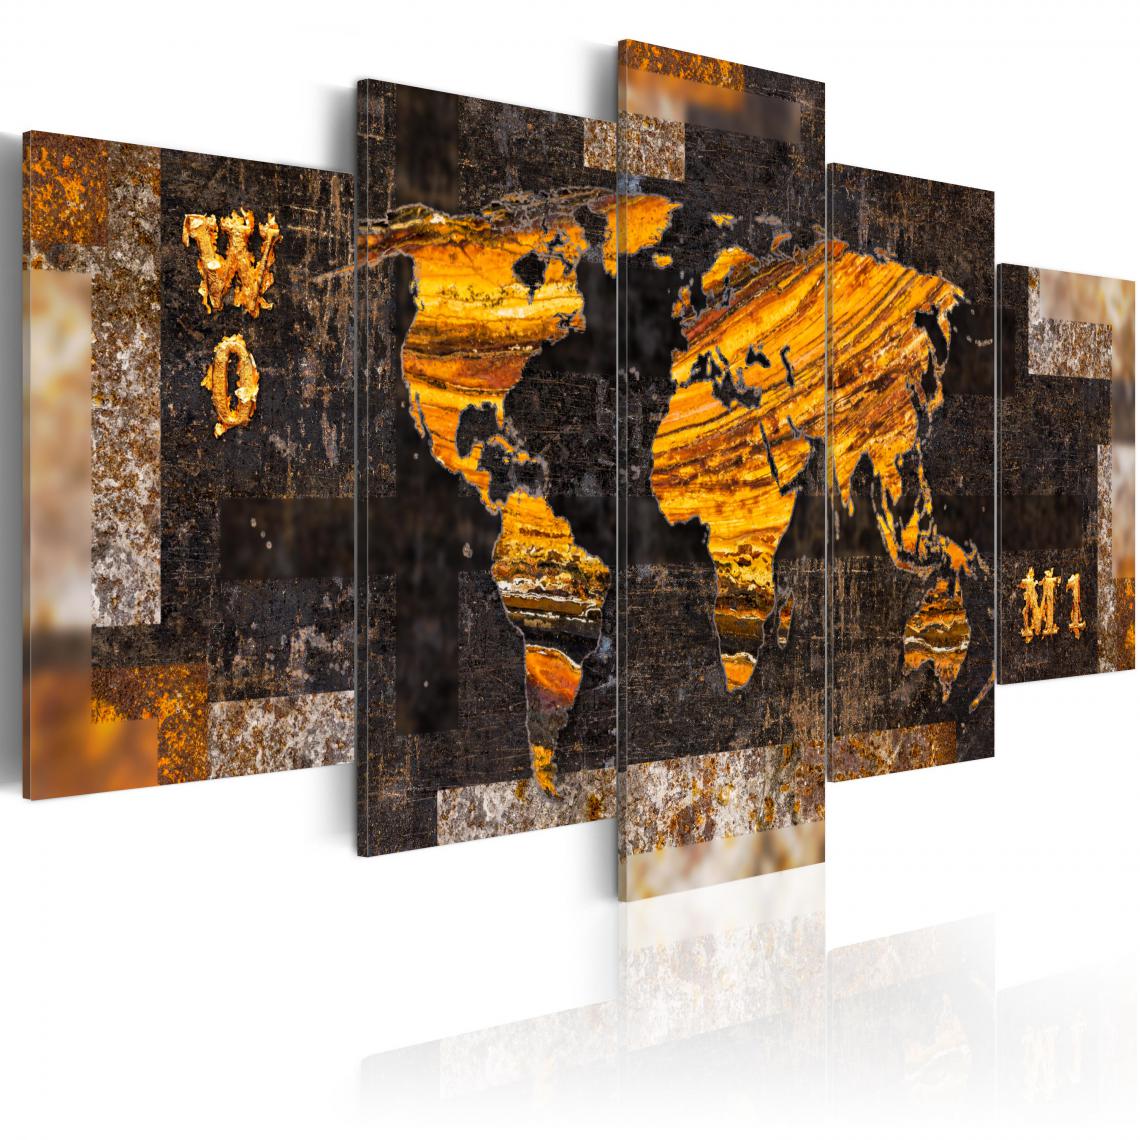 Decoshop26 - Tableau sur toile en 5 panneaux décoration murale image imprimée cadre en bois à suspendre Sentiers dorés 100x50 cm 11_0004210 - Tableaux, peintures